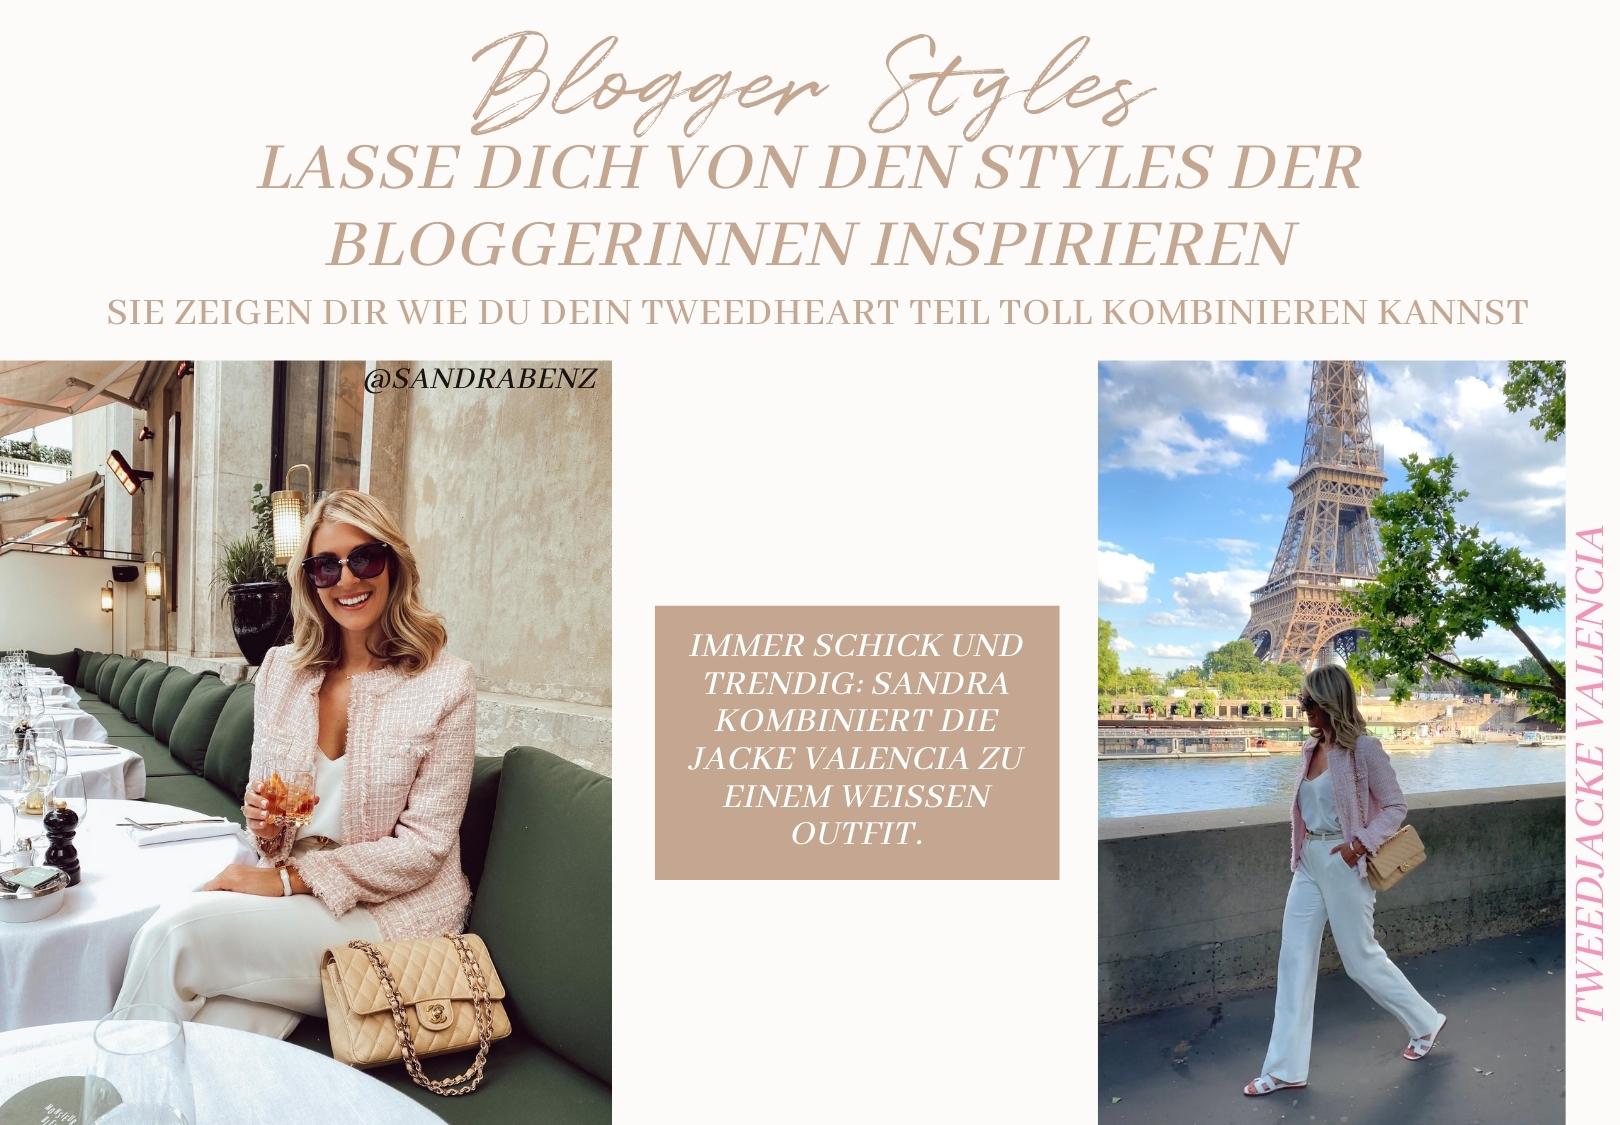 Blogger Style - Valencia Jacke